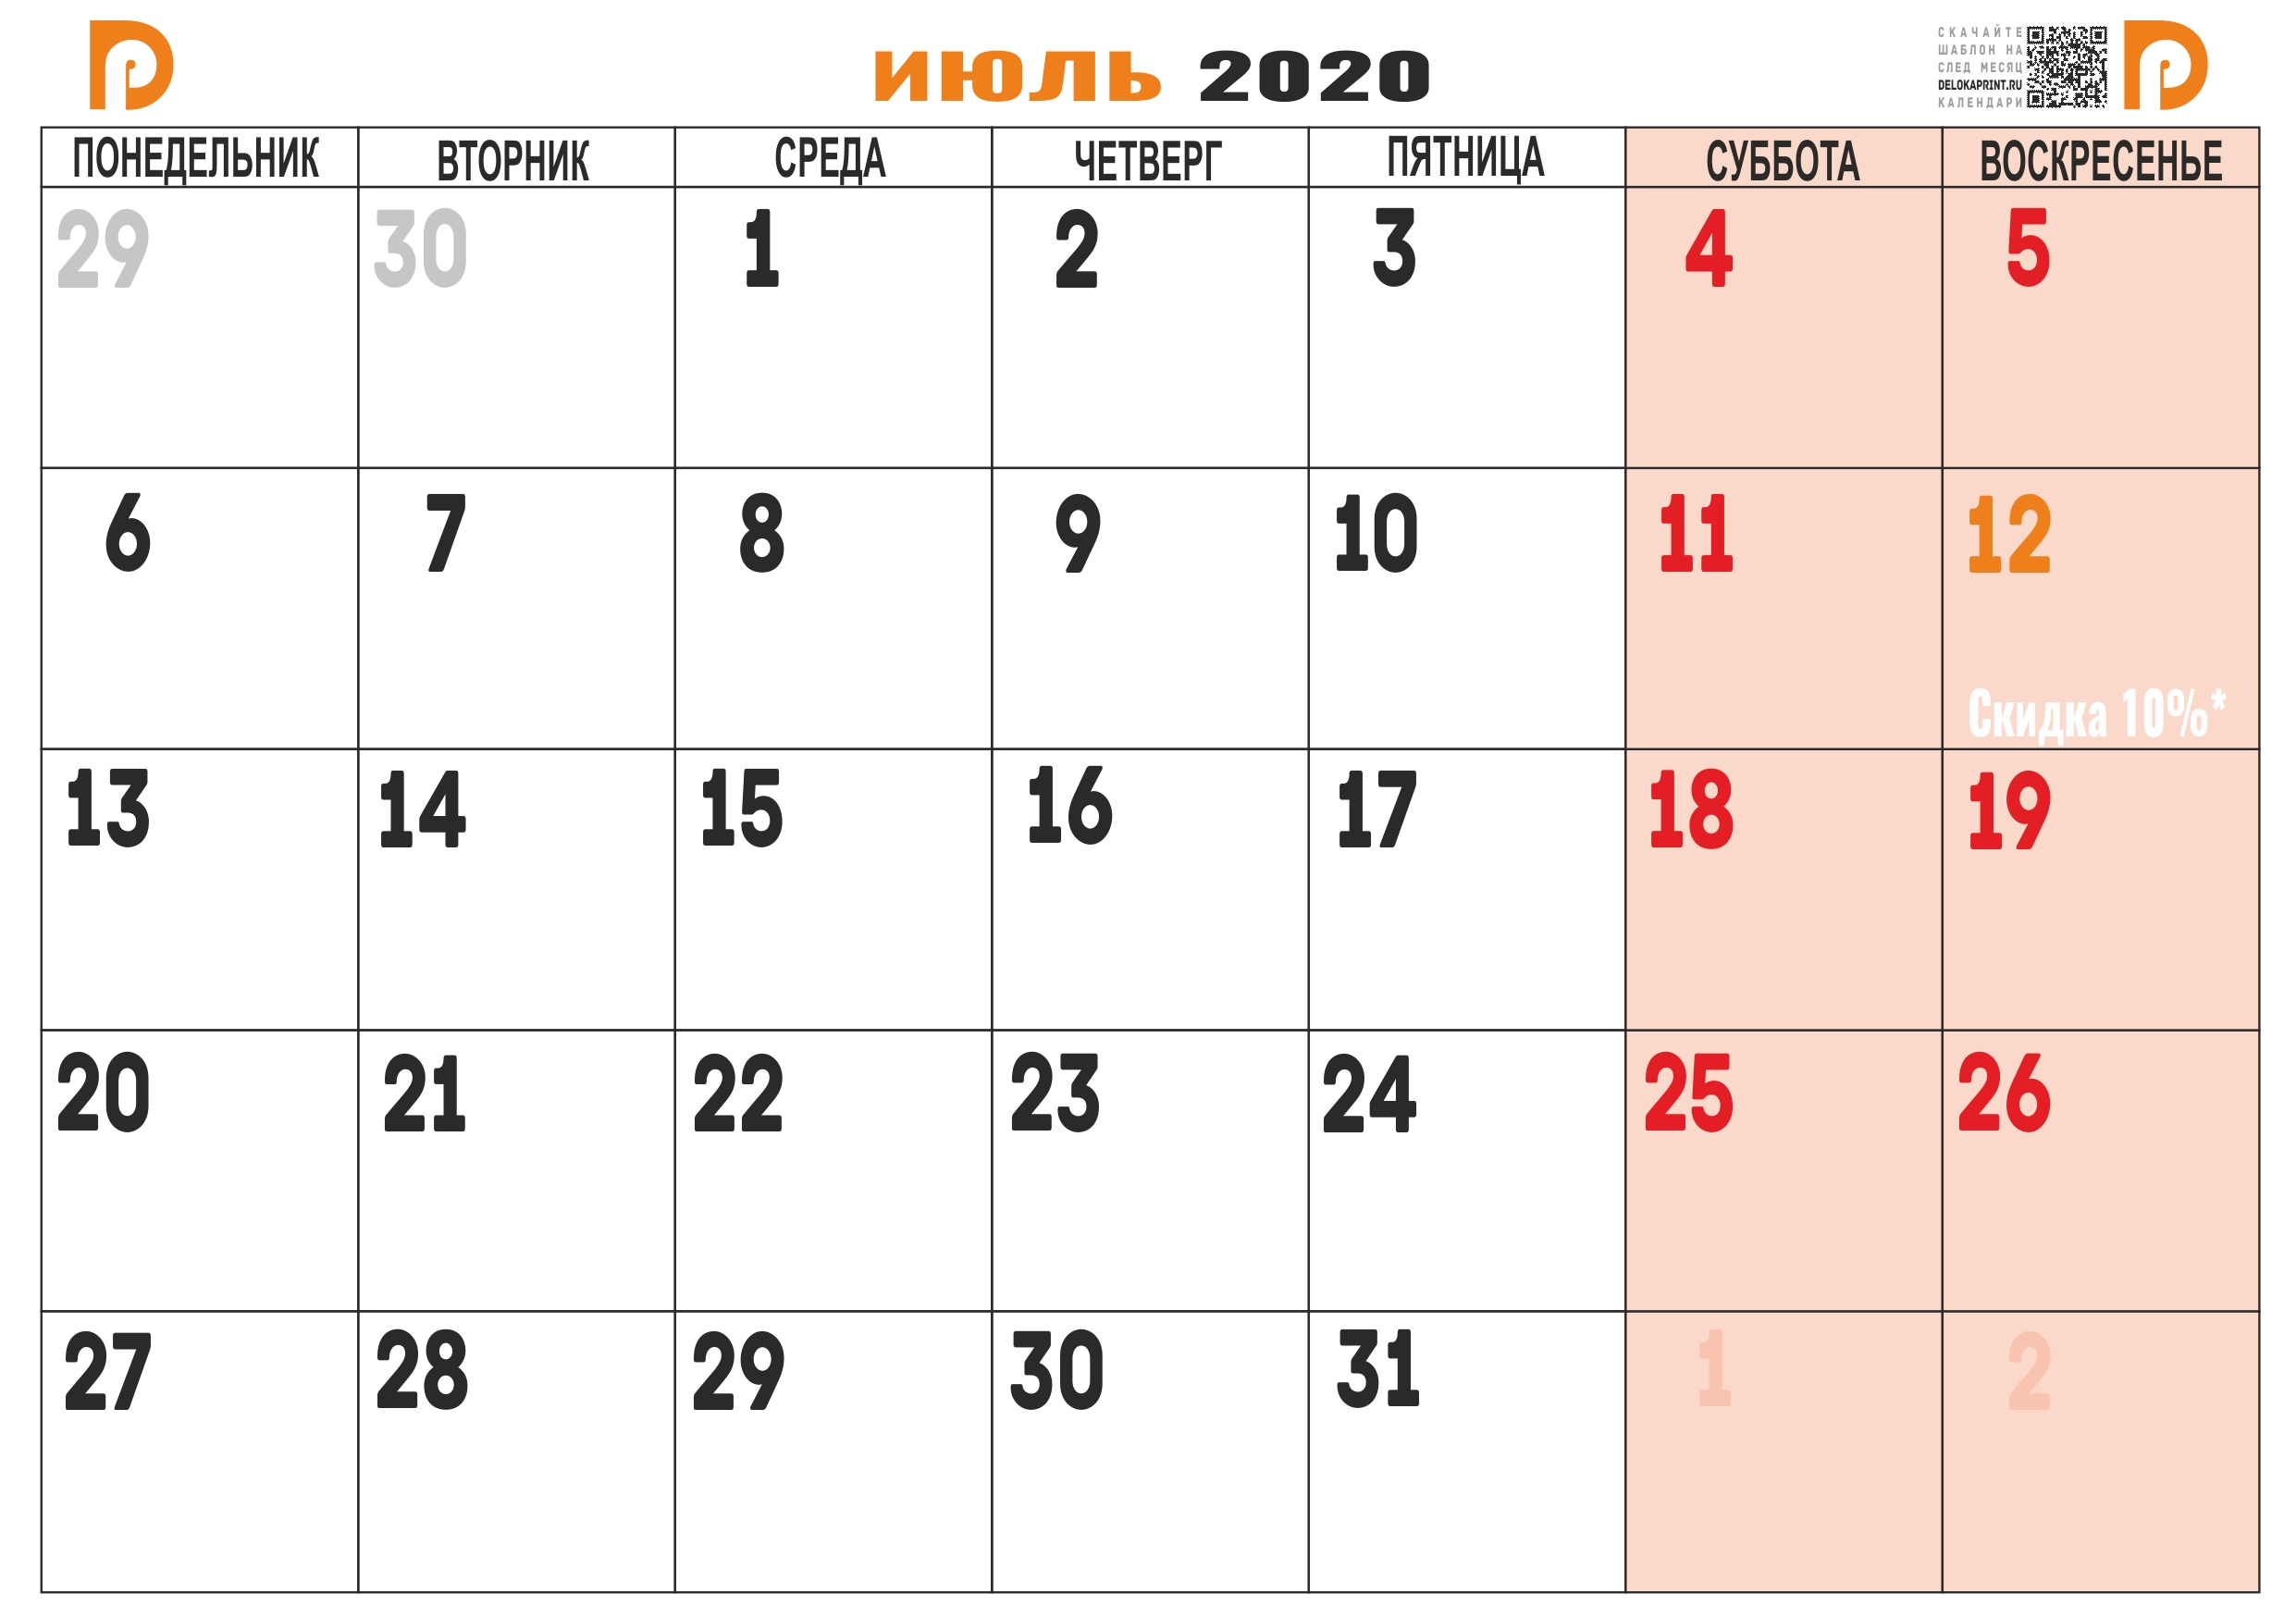 Сколько прошло дней с 18 февраля 2020